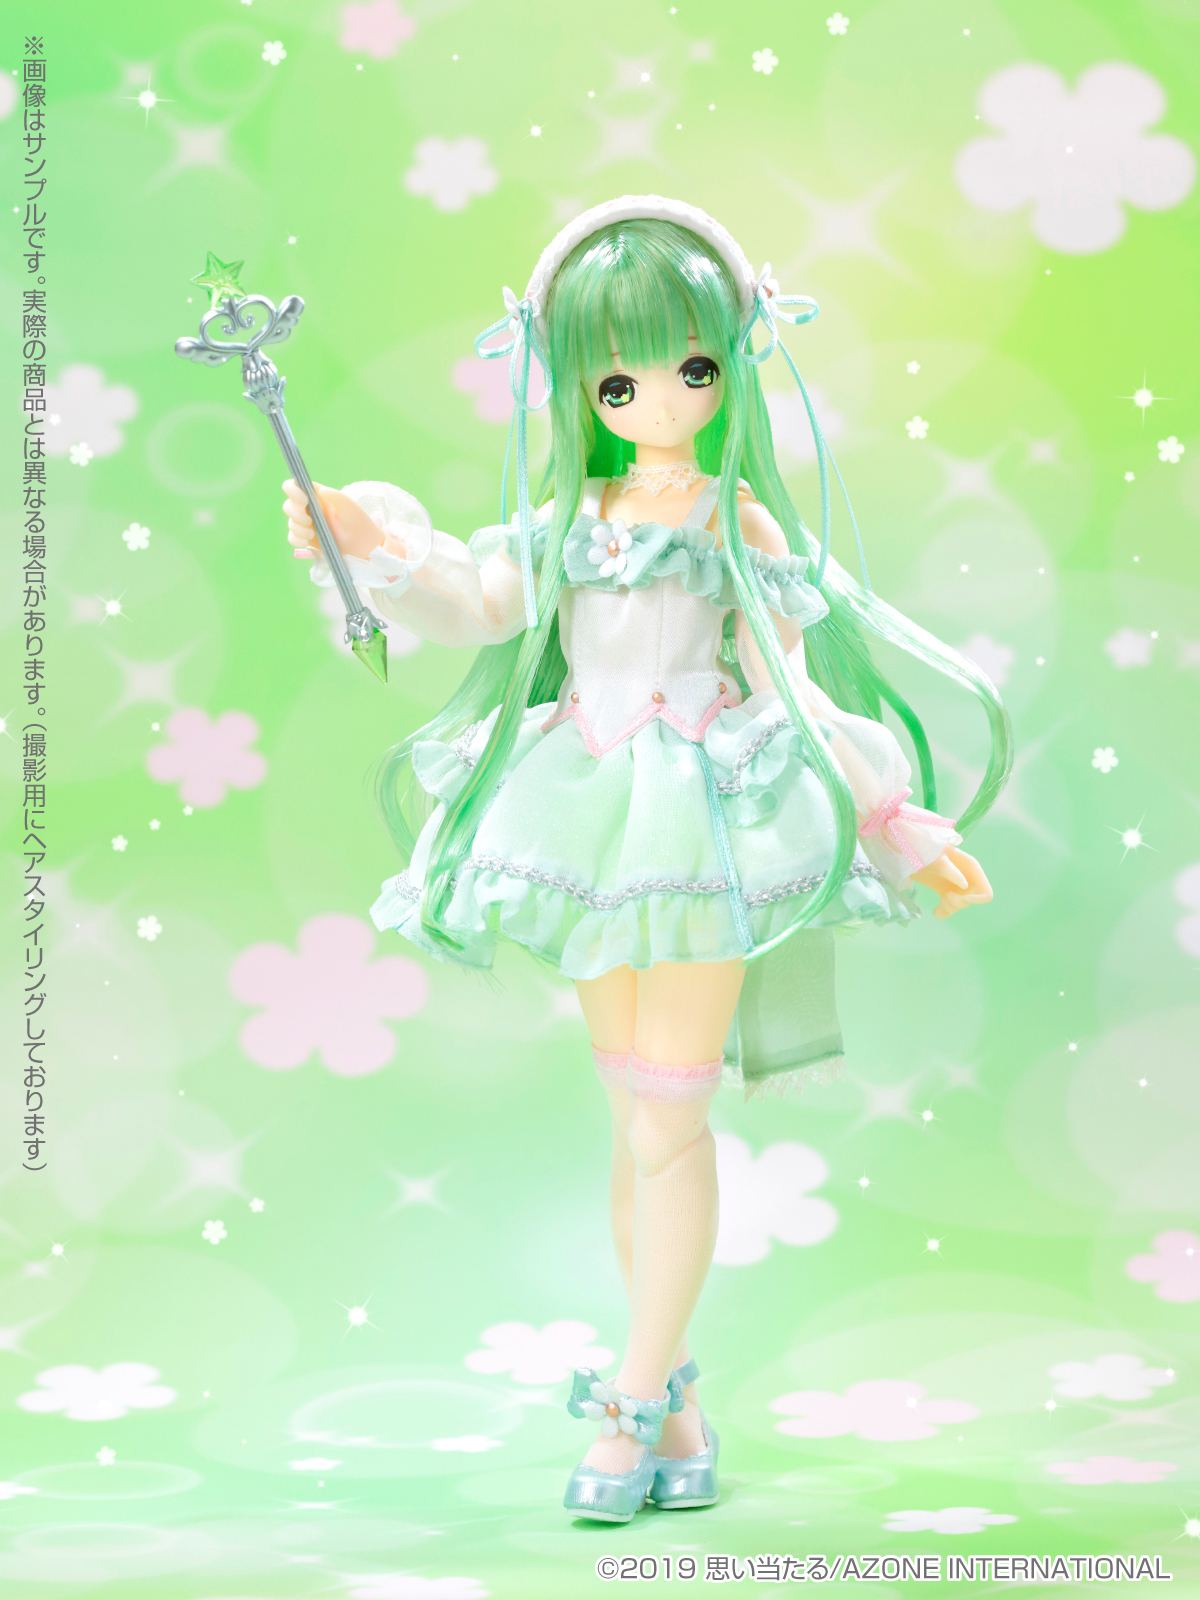 EX Cute 13th Series Magical Cute 1/6 Scale Fashion Doll: Floral